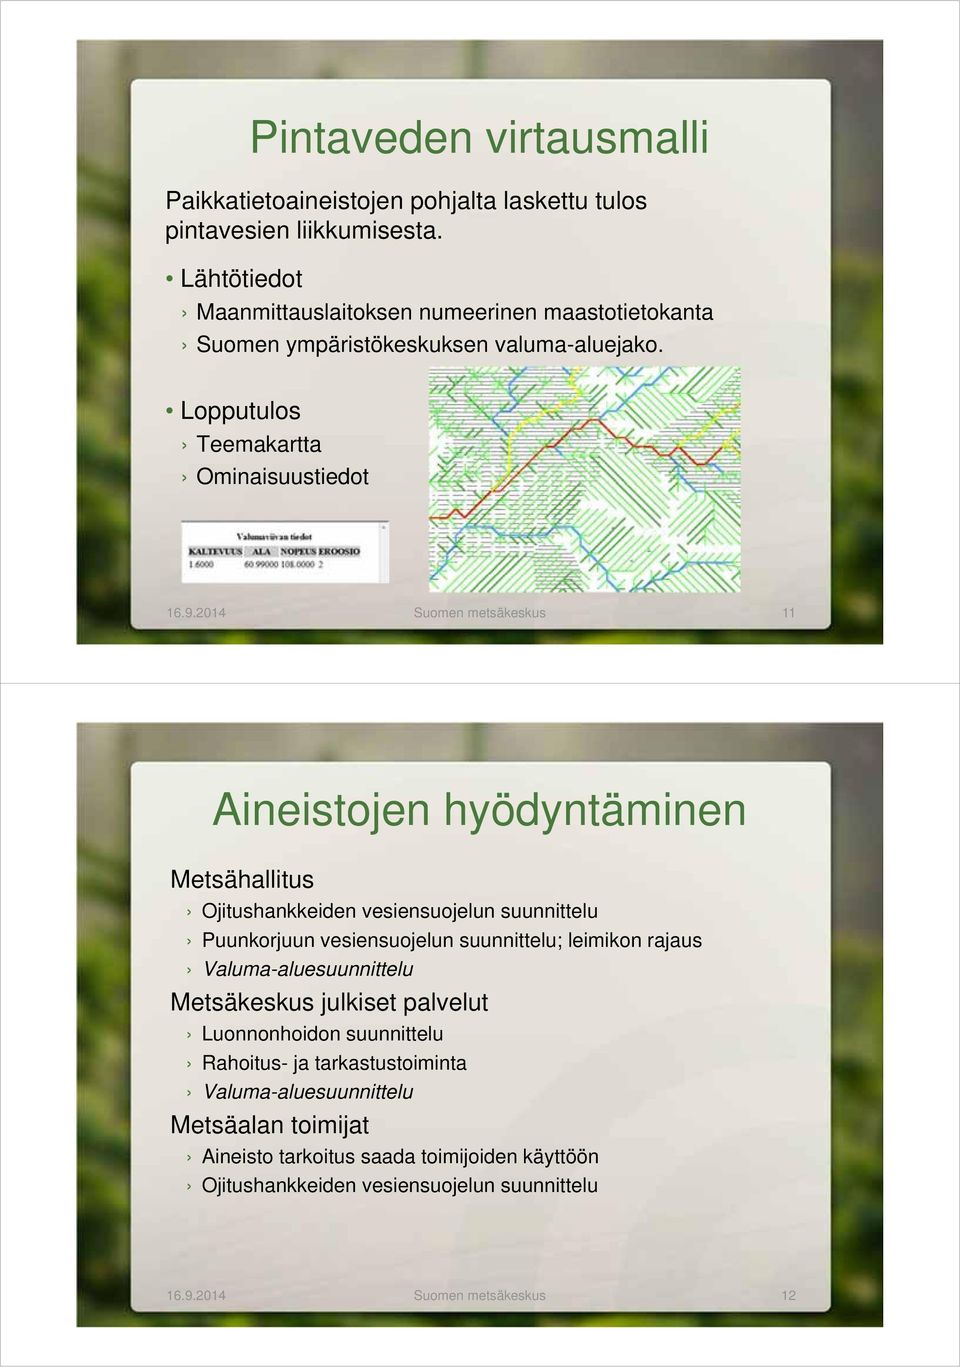 2014 Suomen metsäkeskus 11 Aineistojen hyödyntäminen Metsähallitus Ojitushankkeiden vesiensuojelun suunnittelu Puunkorjuun vesiensuojelun suunnittelu; leimikon rajaus